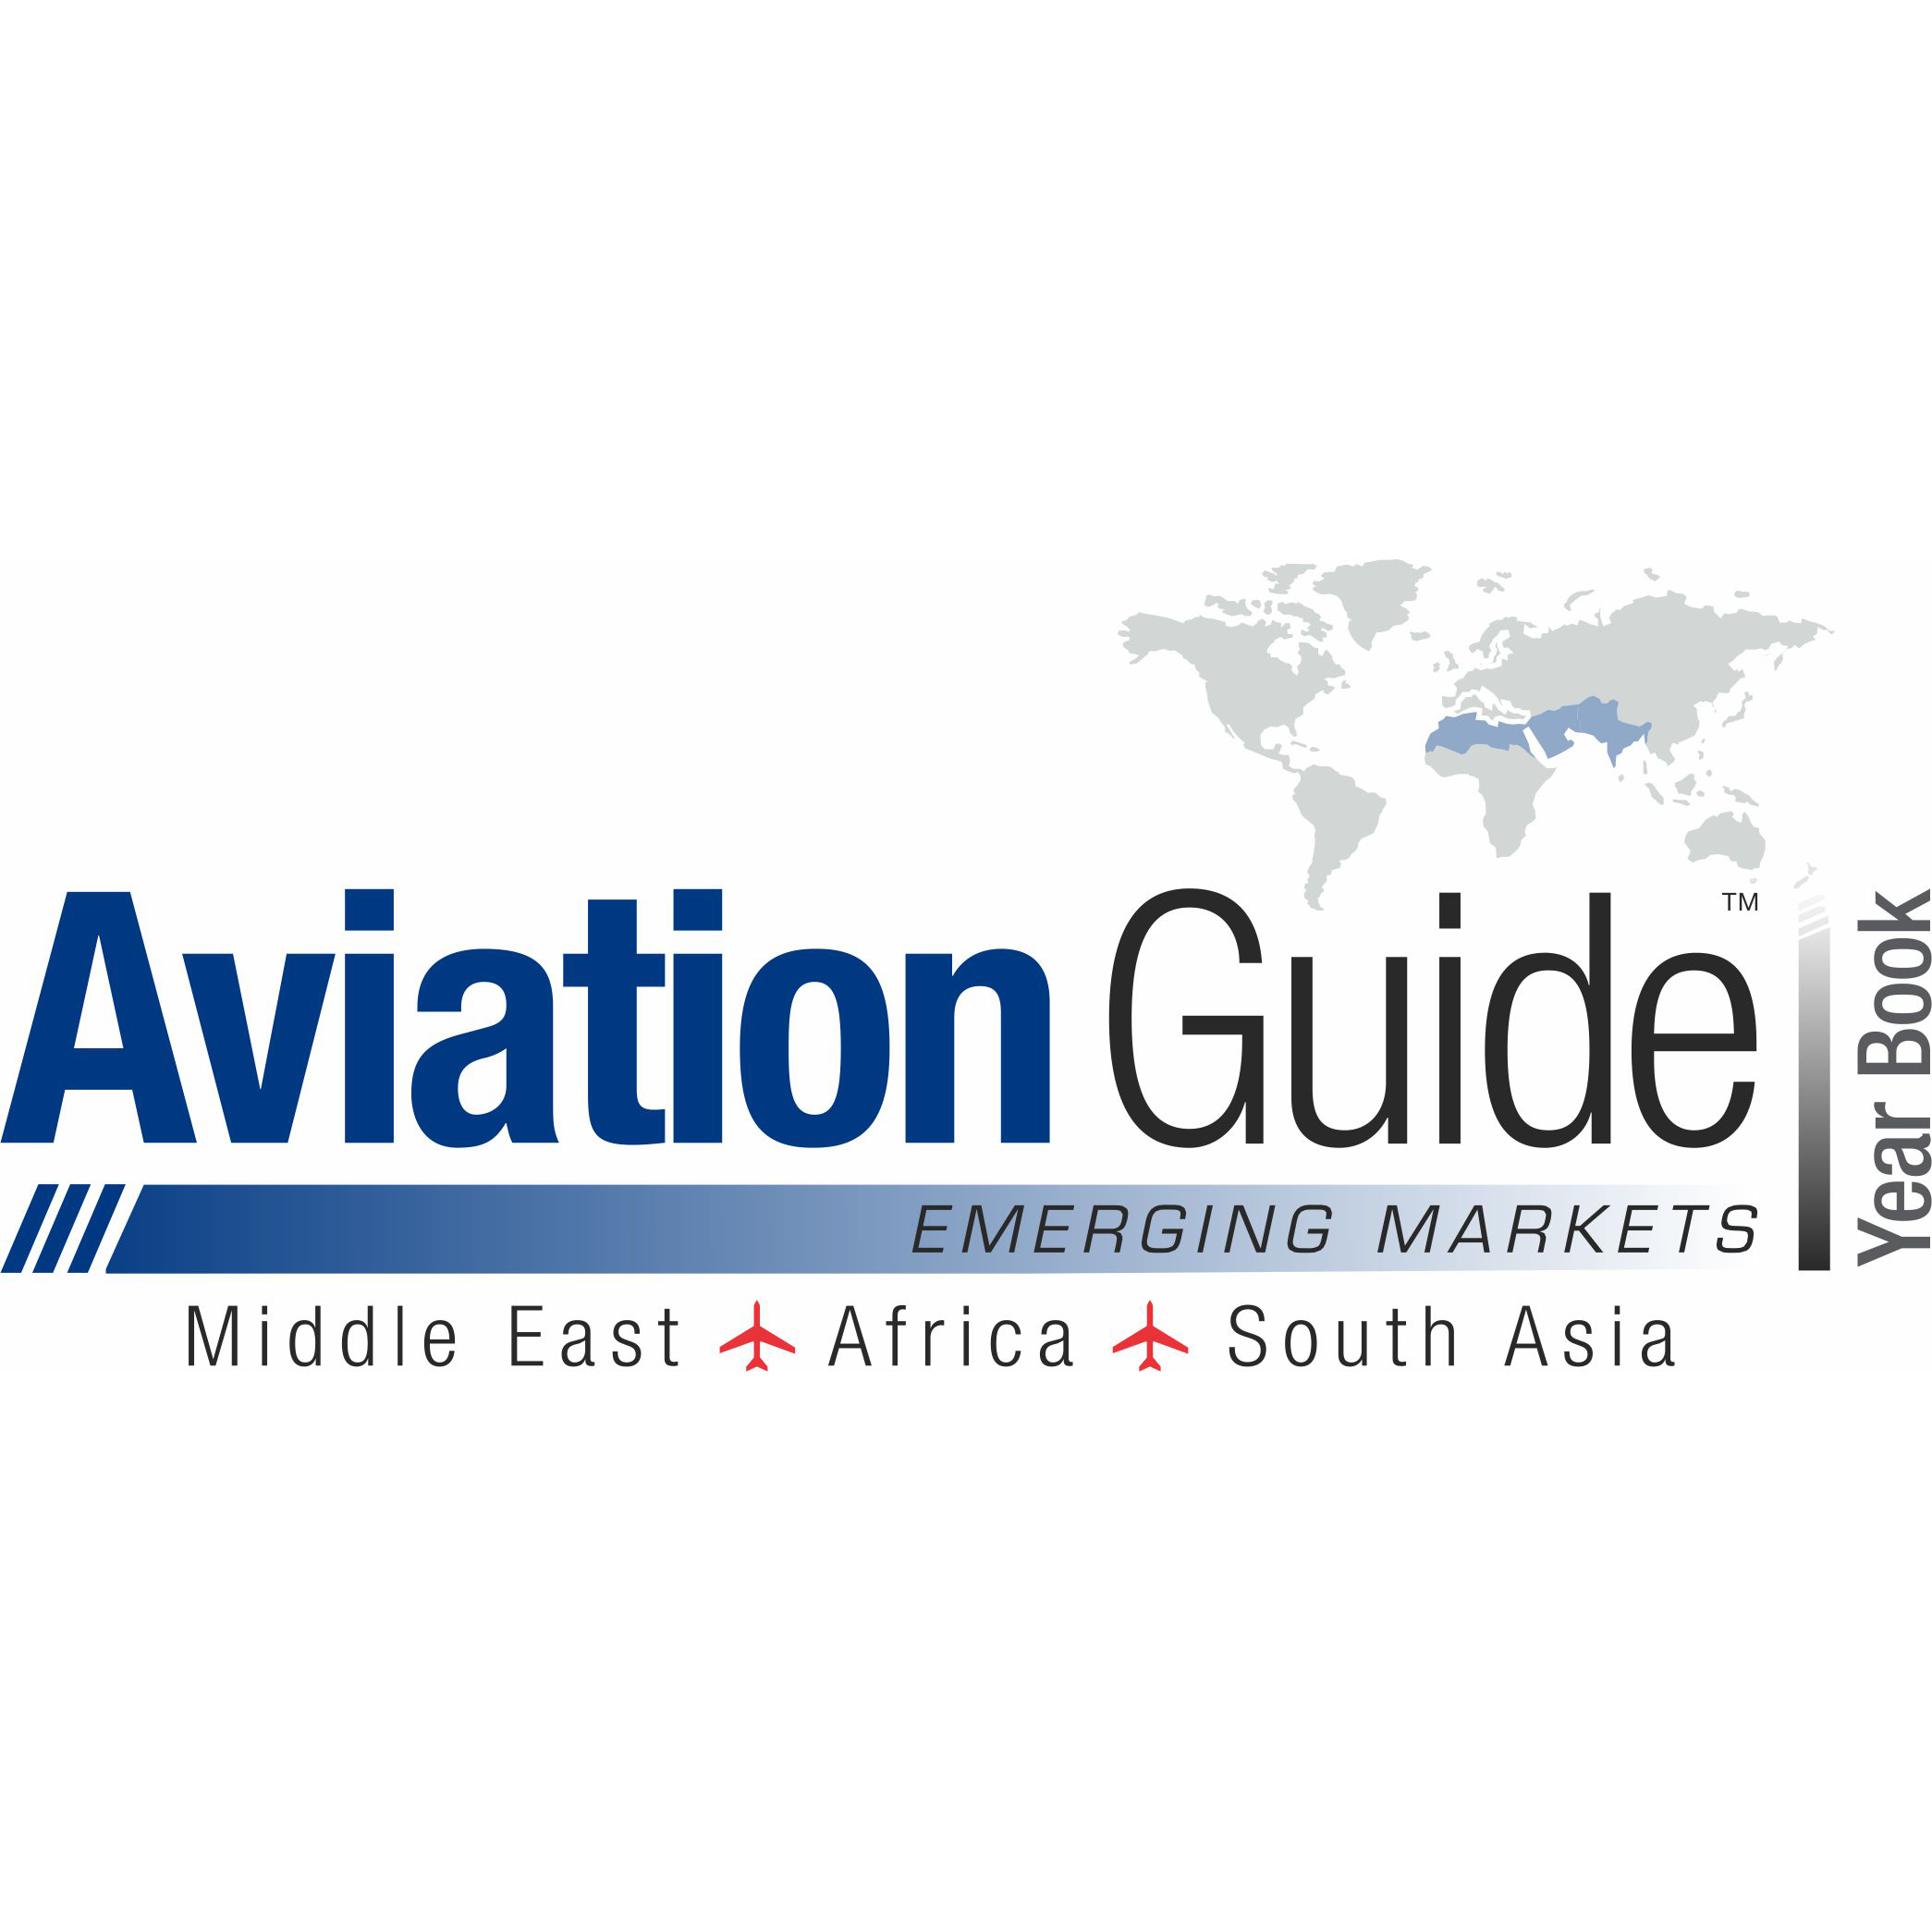 Aviation Guide logo